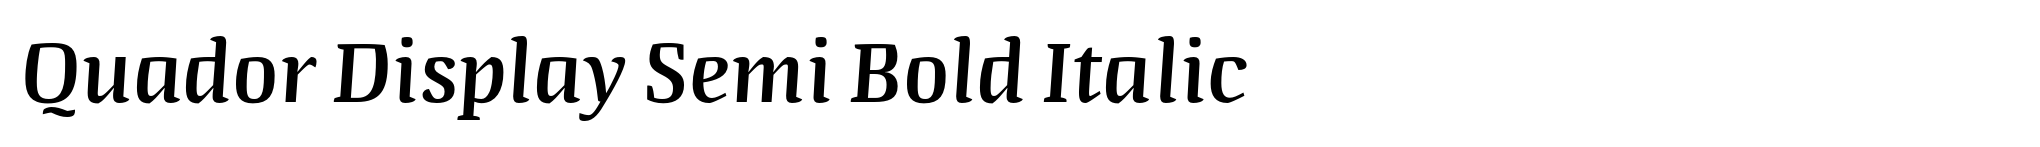 Quador Display Semi Bold Italic image